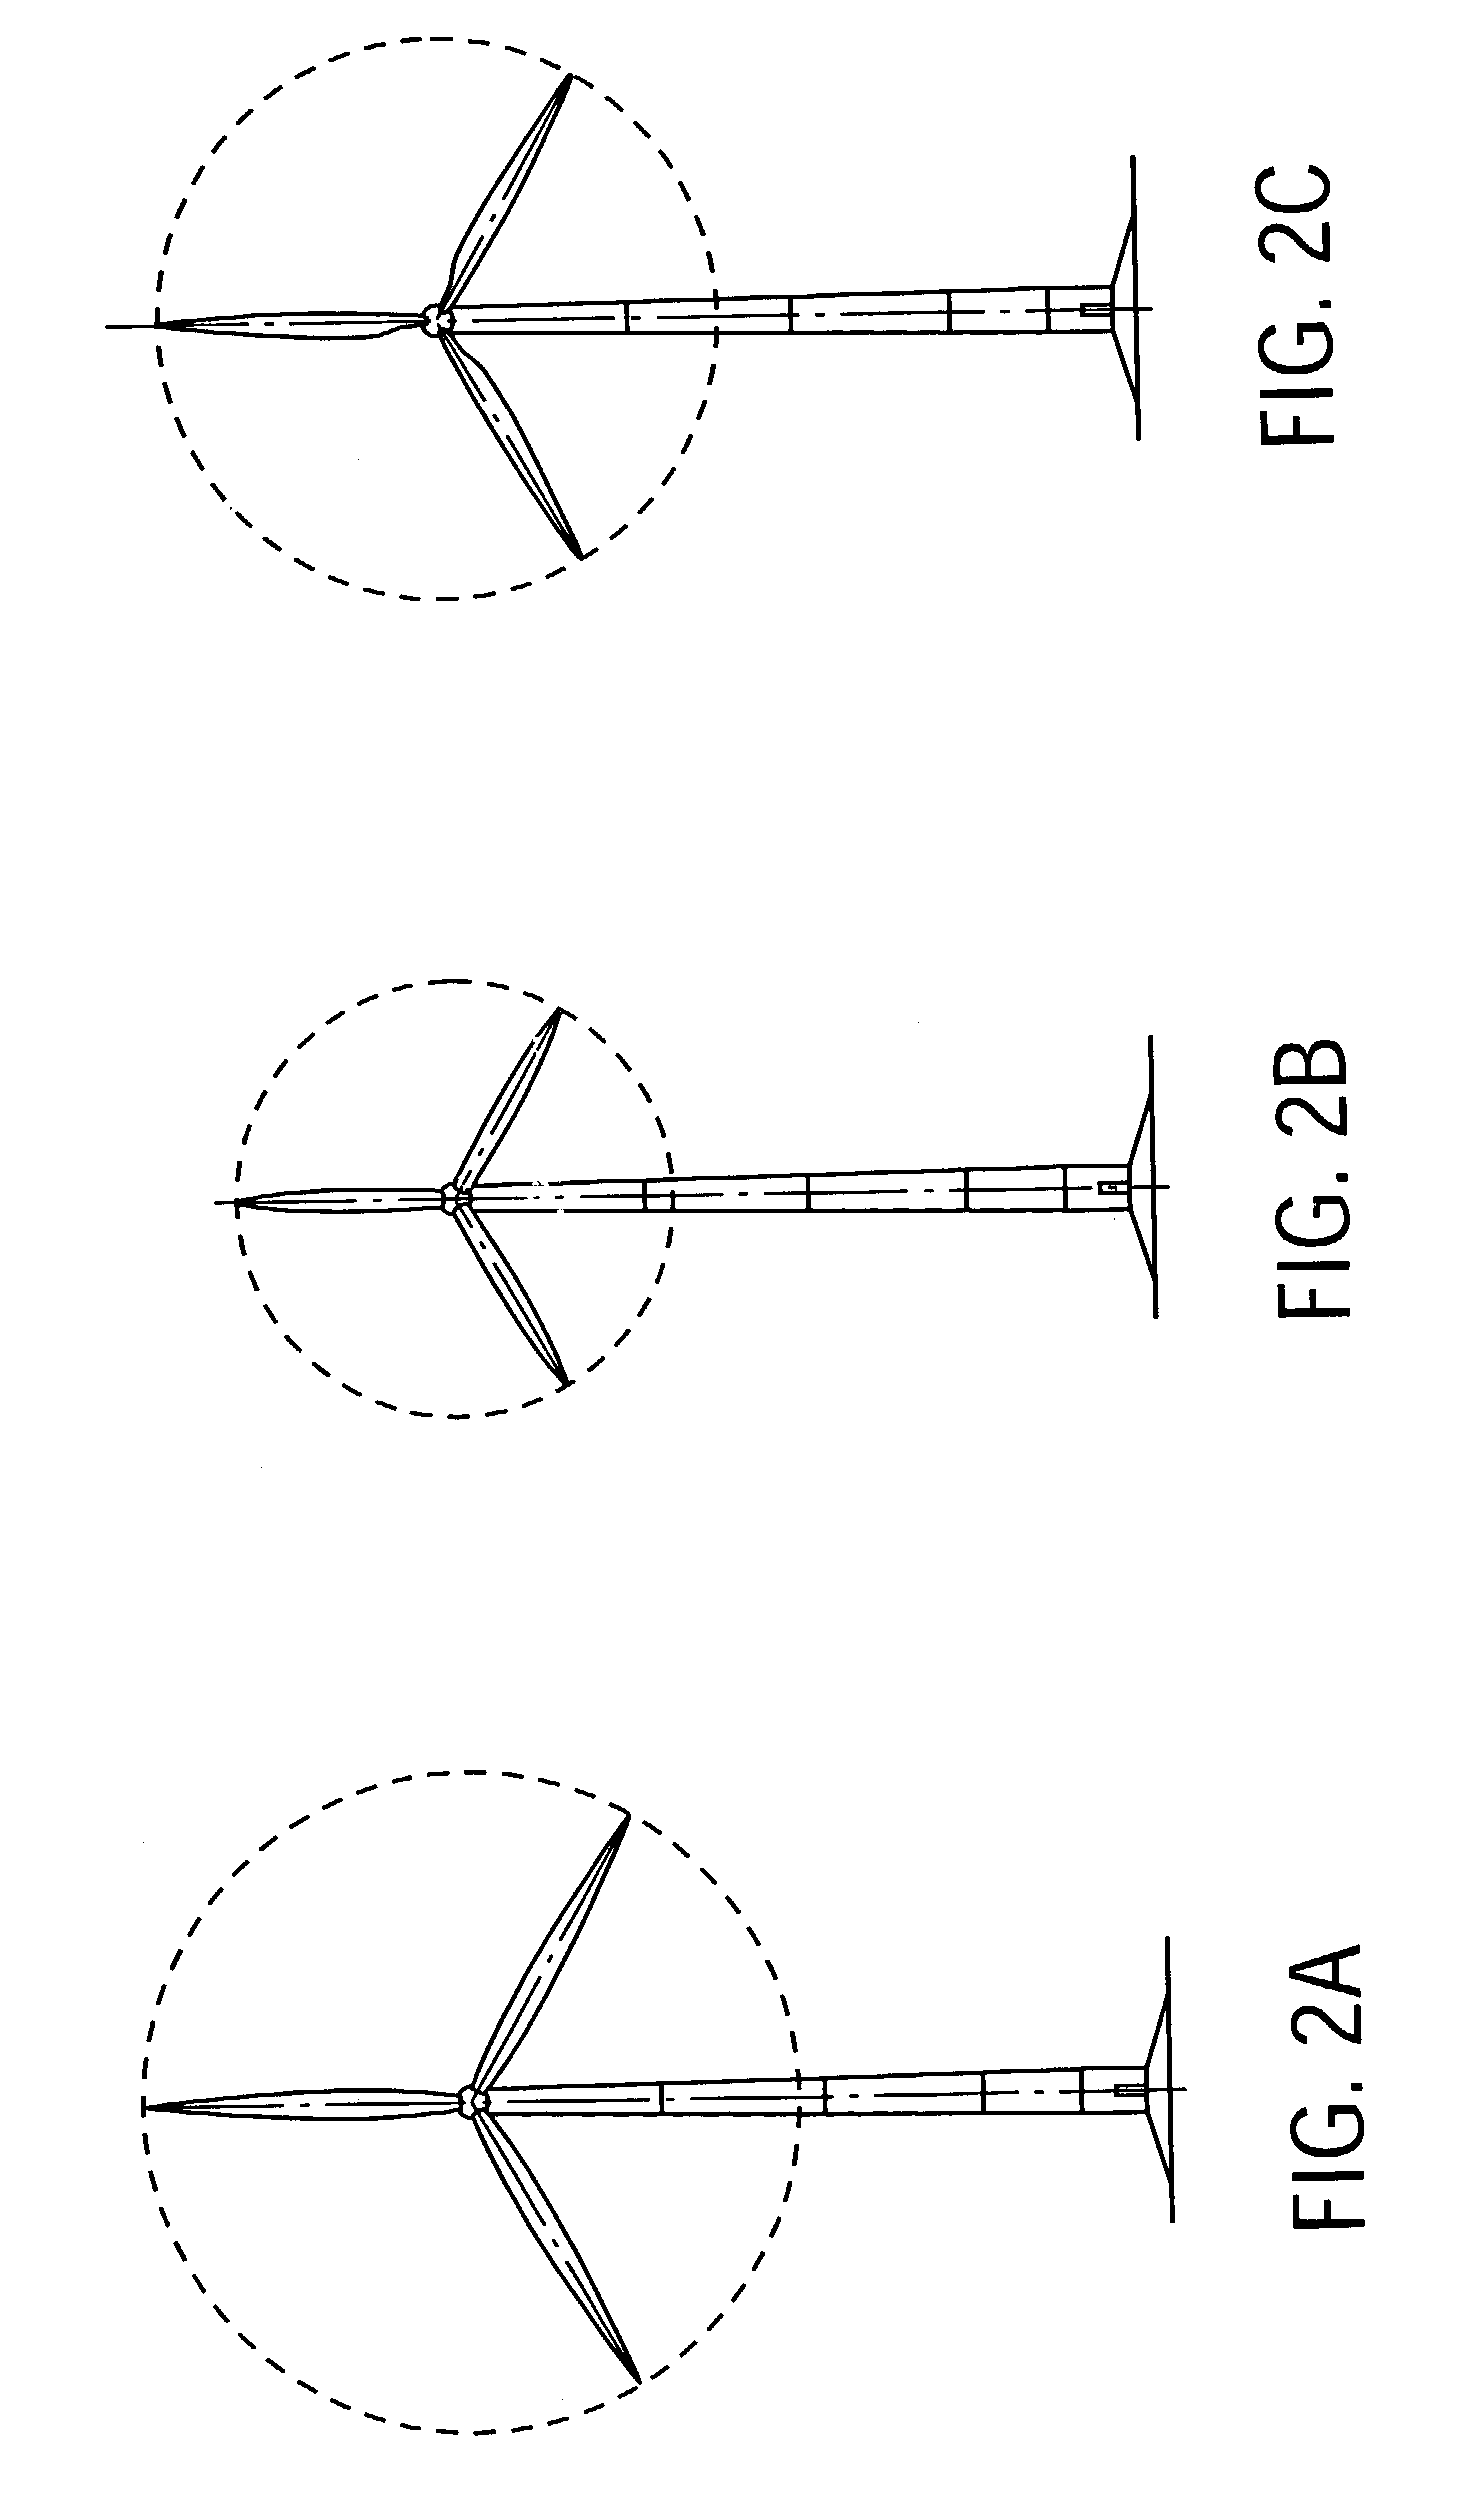 Variable diameter wind turbine rotor blades